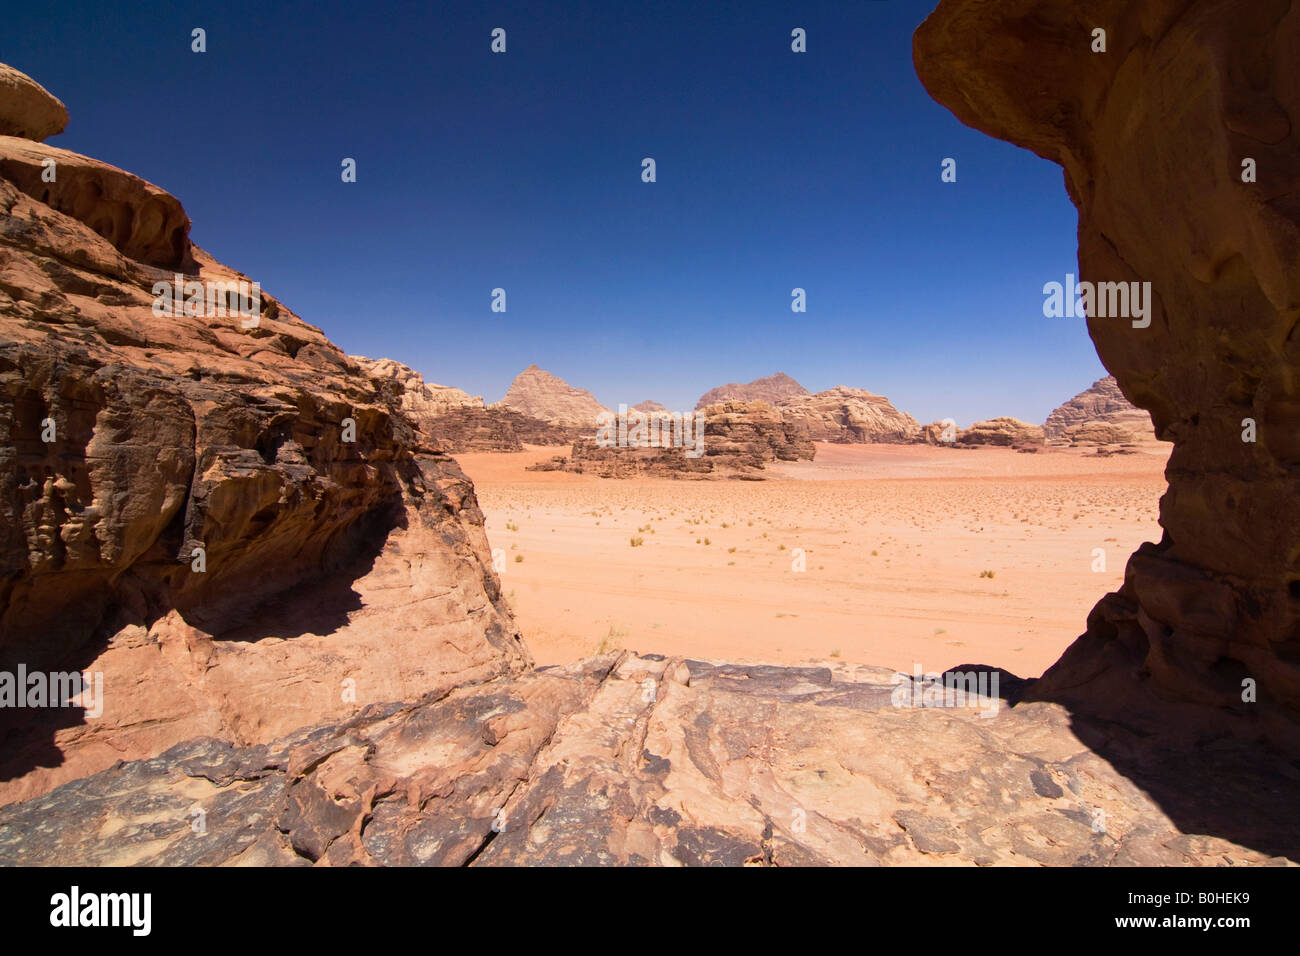 Les formations de roche dans le désert, Wadi Rum, Jordanie, Moyen-Orient Banque D'Images